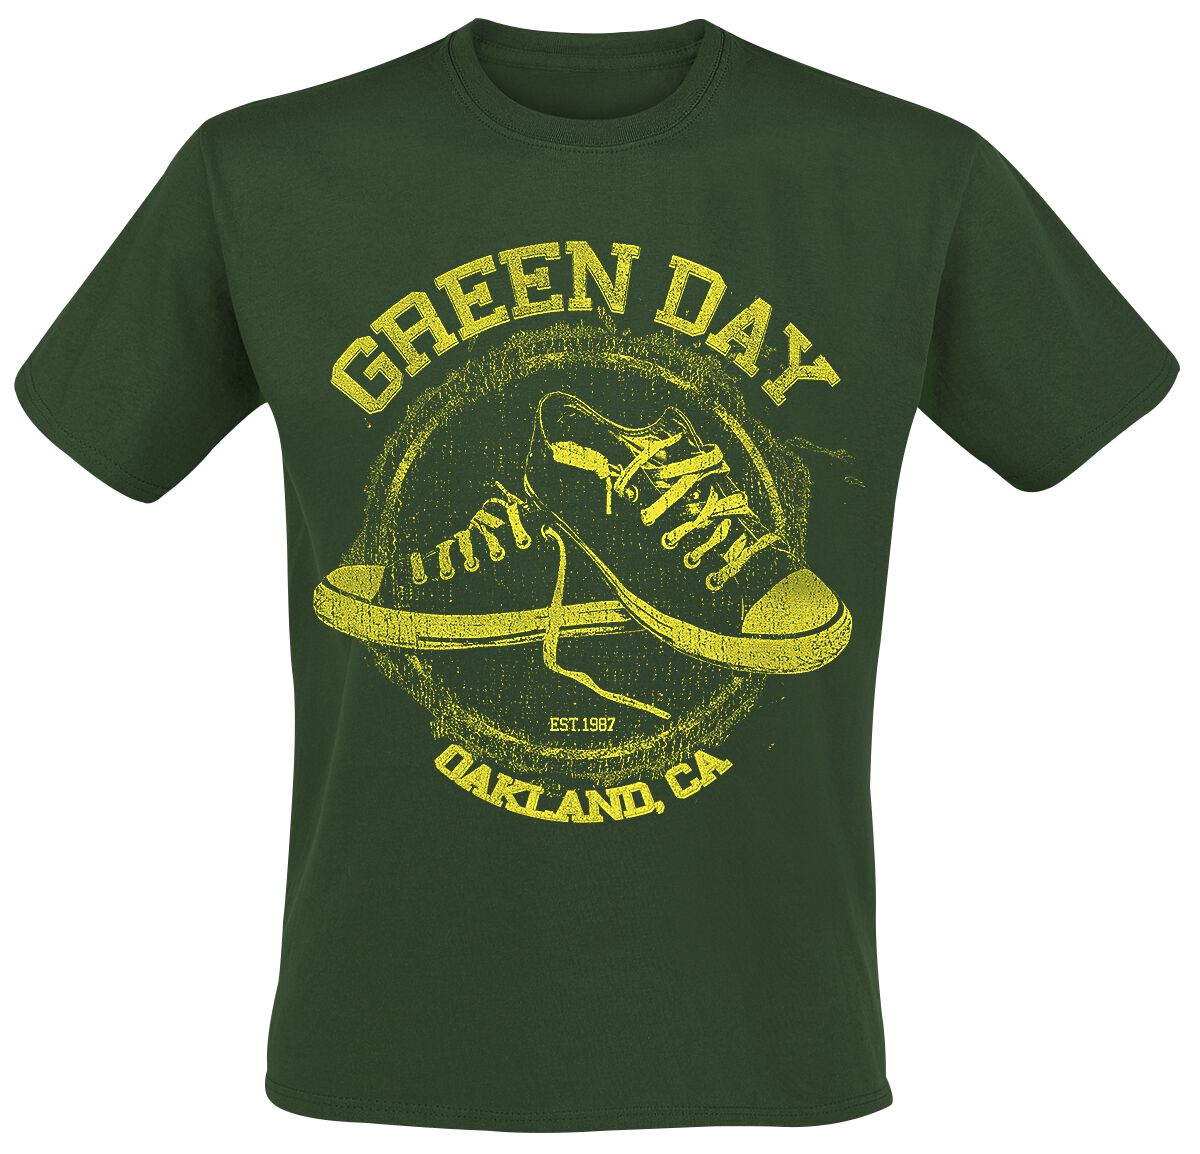 Green Day T-Shirt - All Star - S bis XXL - für Männer - Größe L - grün  - Lizenziertes Merchandise!